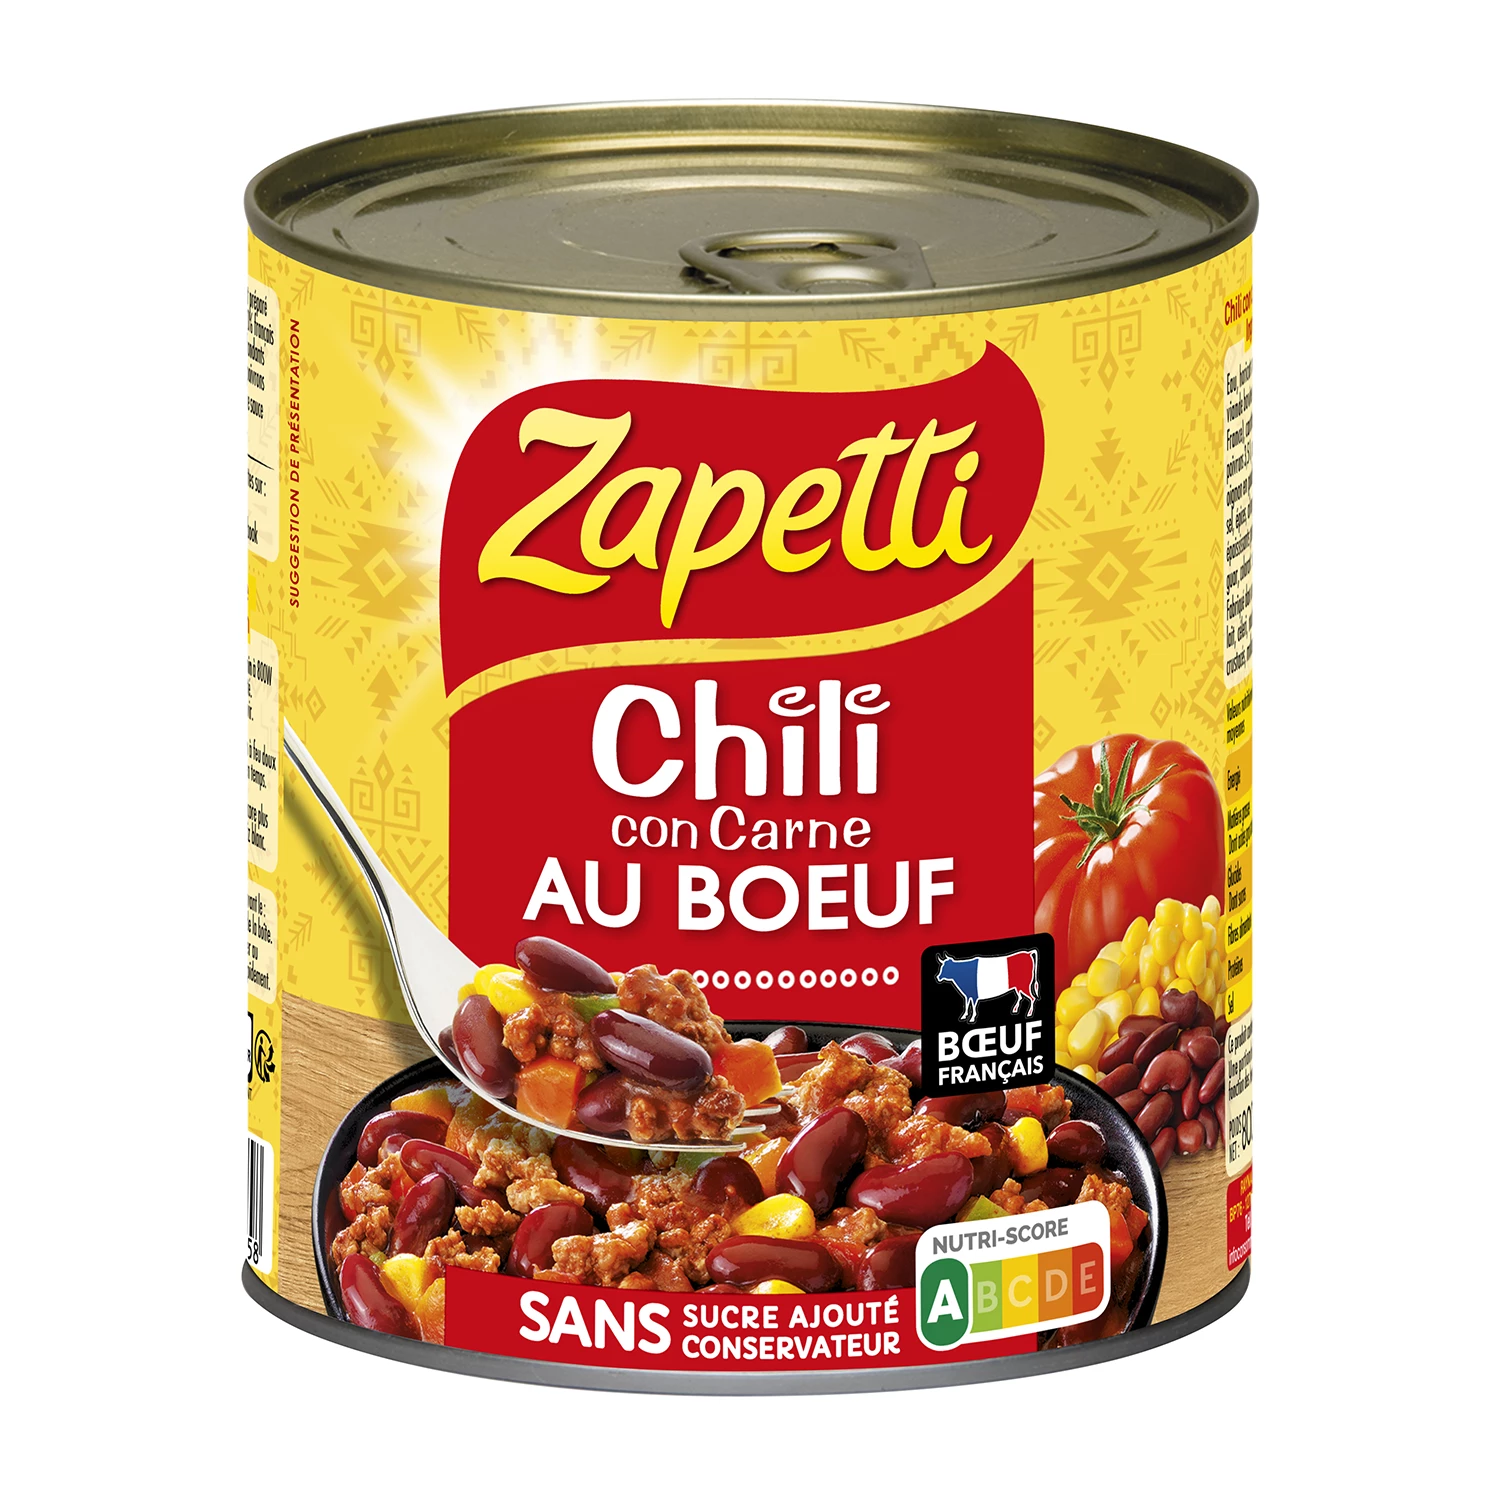 Kant-en-klaar Chili Con Carne Rundvlees, 800g - ZAPETTI